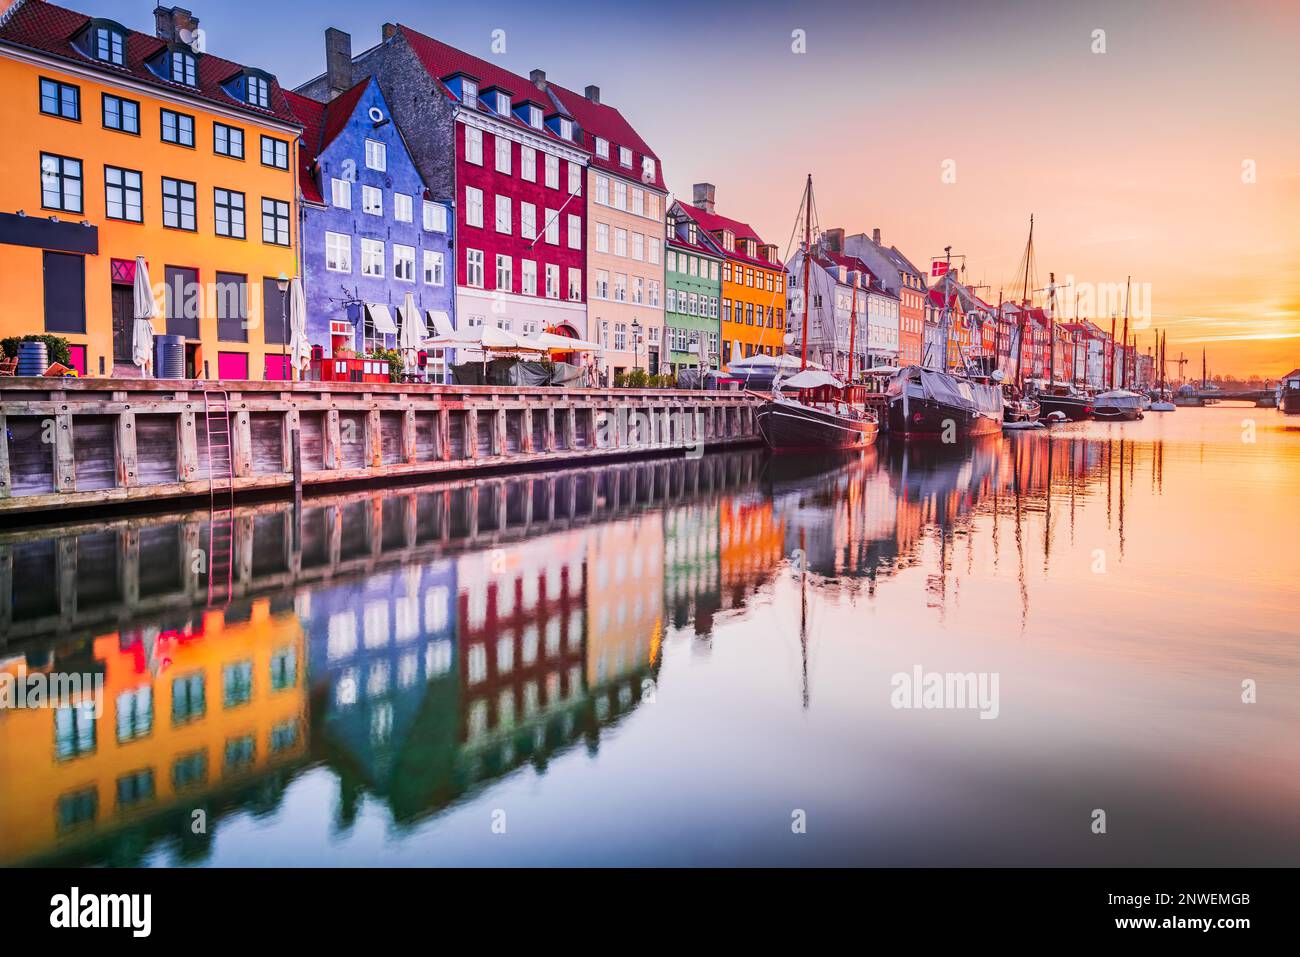 Kopenhagen, Dänemark. Charme des Nyhavn-Kanals, ikonischer Ort, farbenfroher Sonnenaufgang und atemberaubende Wasserreflexionen. Stockfoto